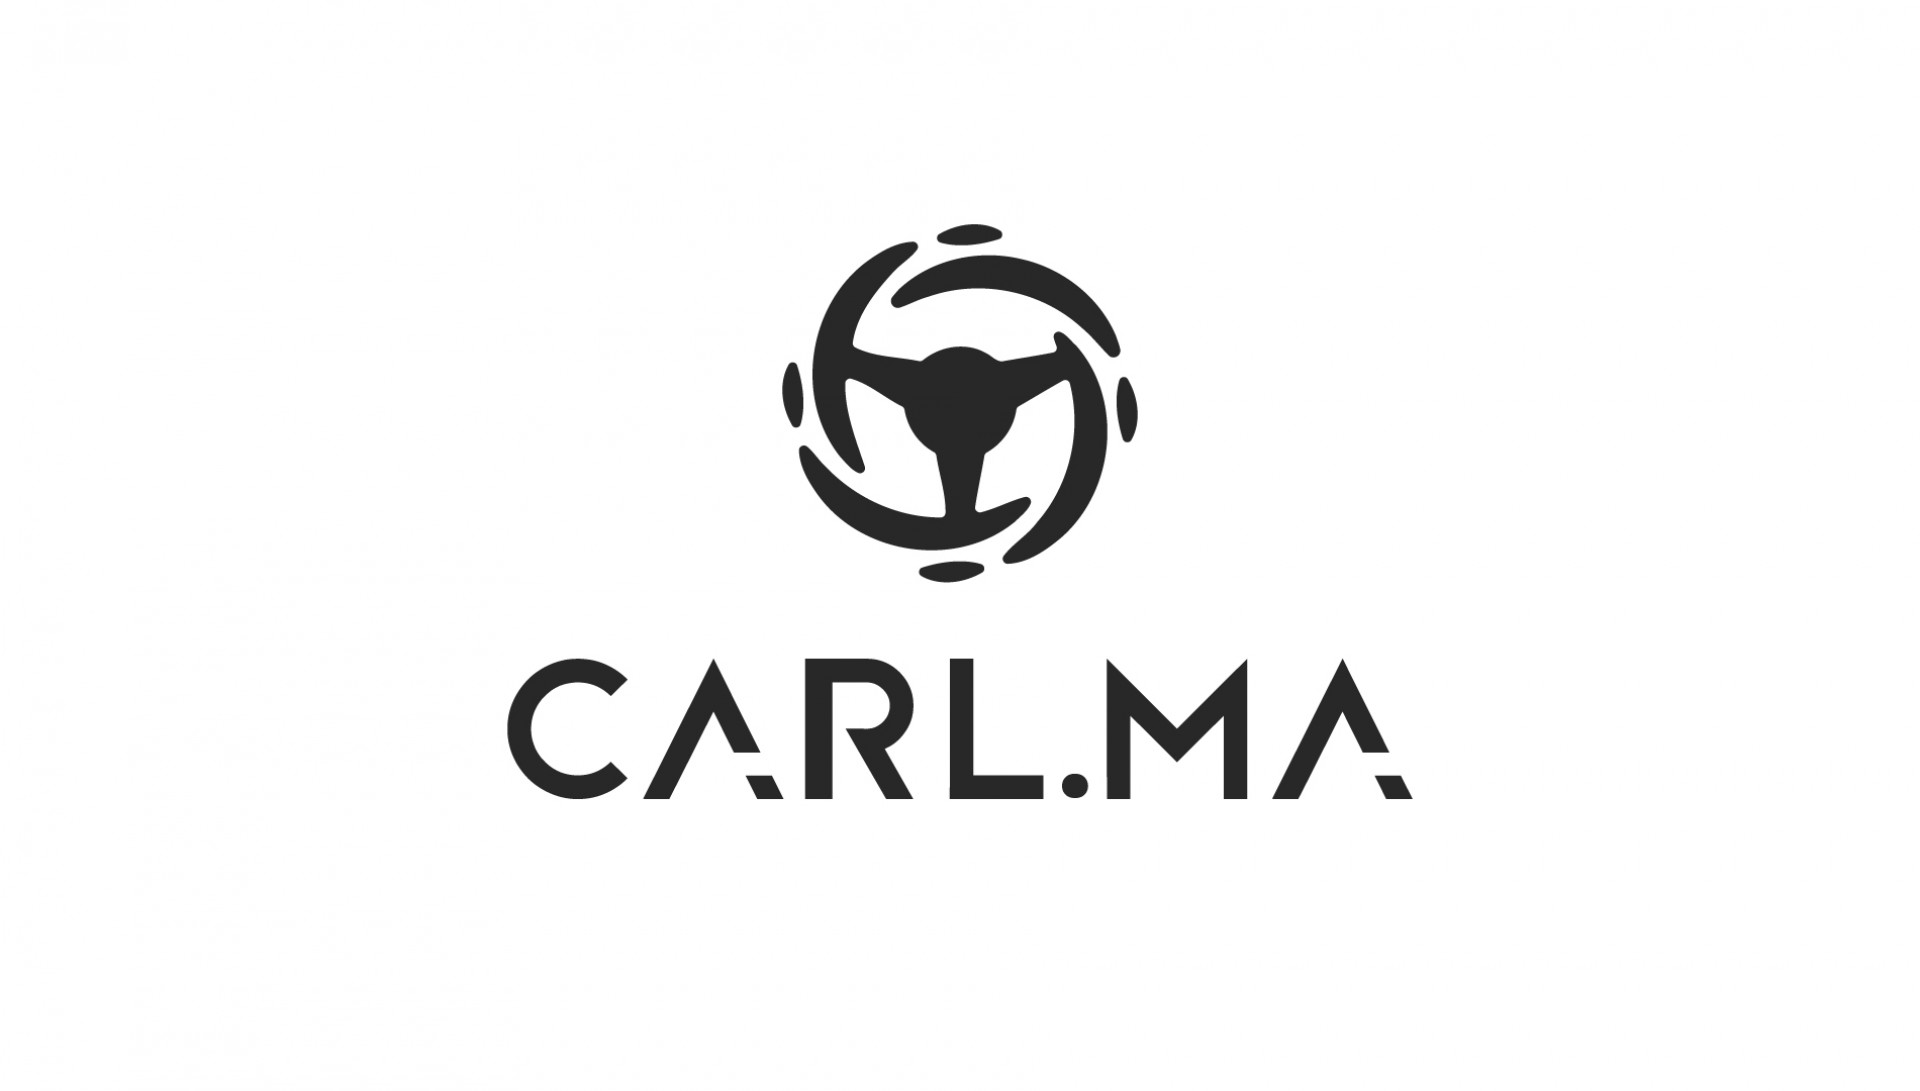 CARL.MA logo